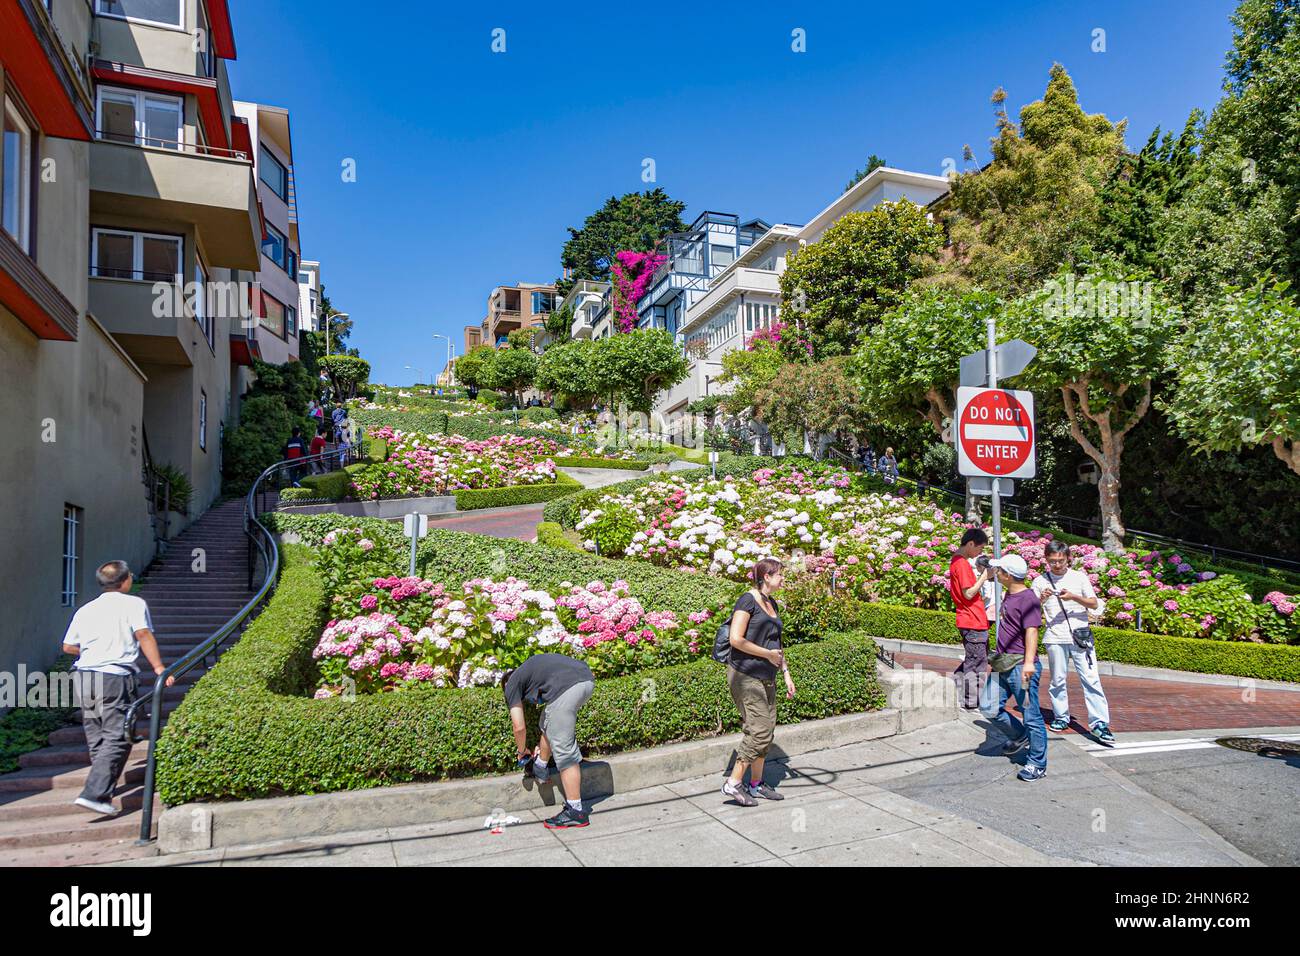 La gente visita la strada longobarda a San Francisco. È noto per la sezione sulla collina russa tra Hyde e Leavenworth, in cui la strada ha otto curve Foto Stock